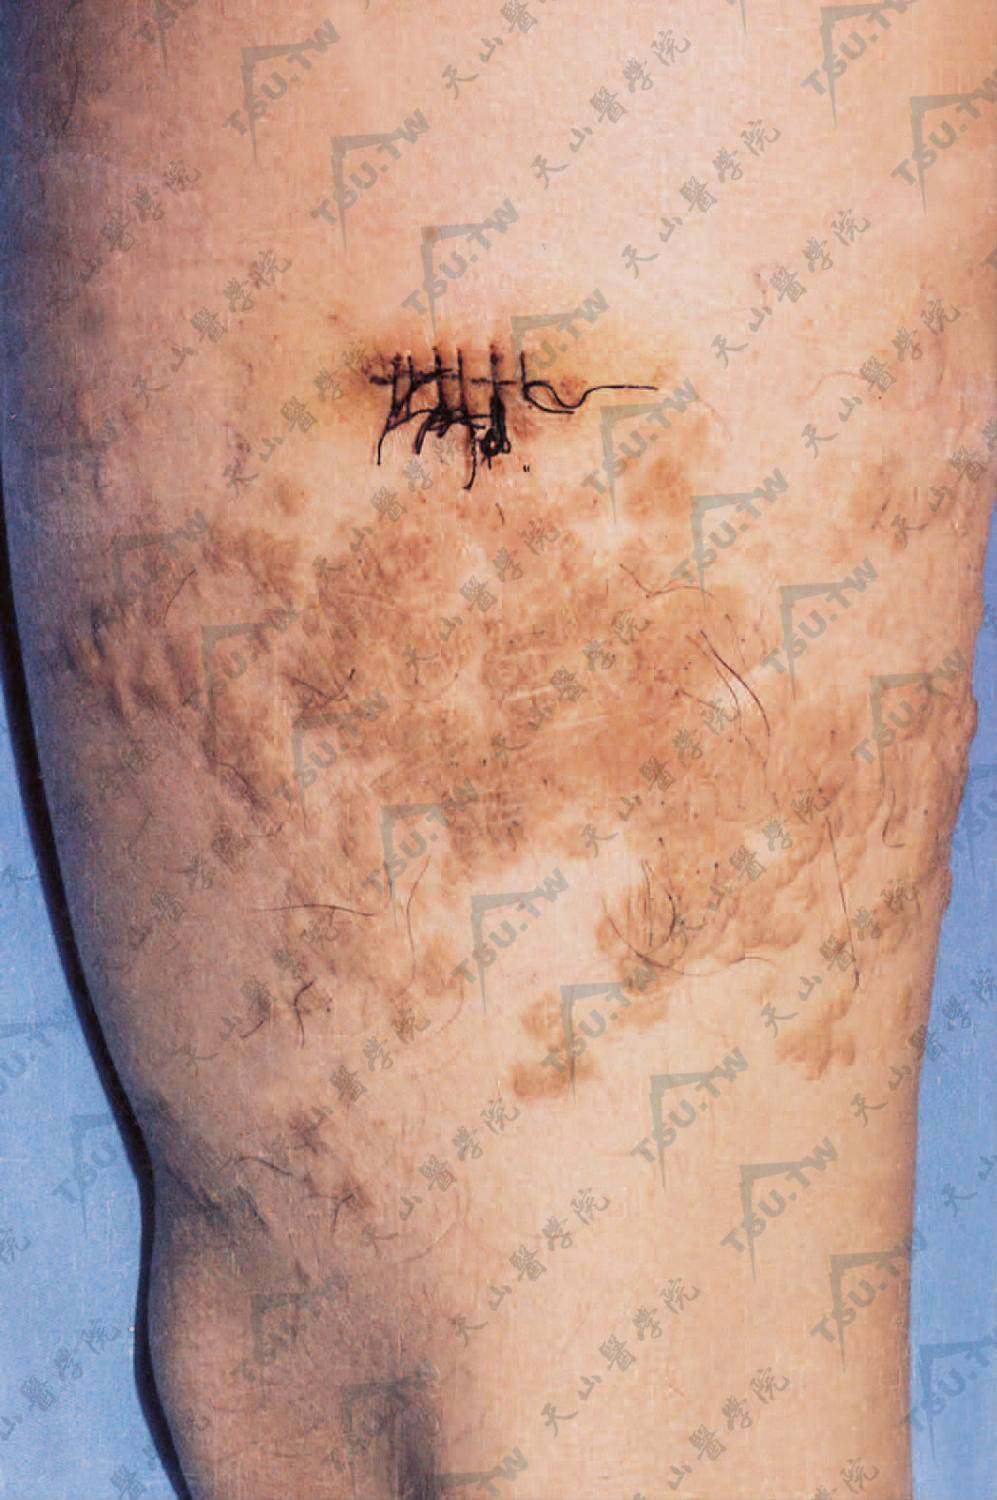 浅表脂肪瘤样痣症状：大腿部皮损为群集性，柔软扁平丘疹或结节，正常肤色或淡黄色，表面光滑或有褶皱